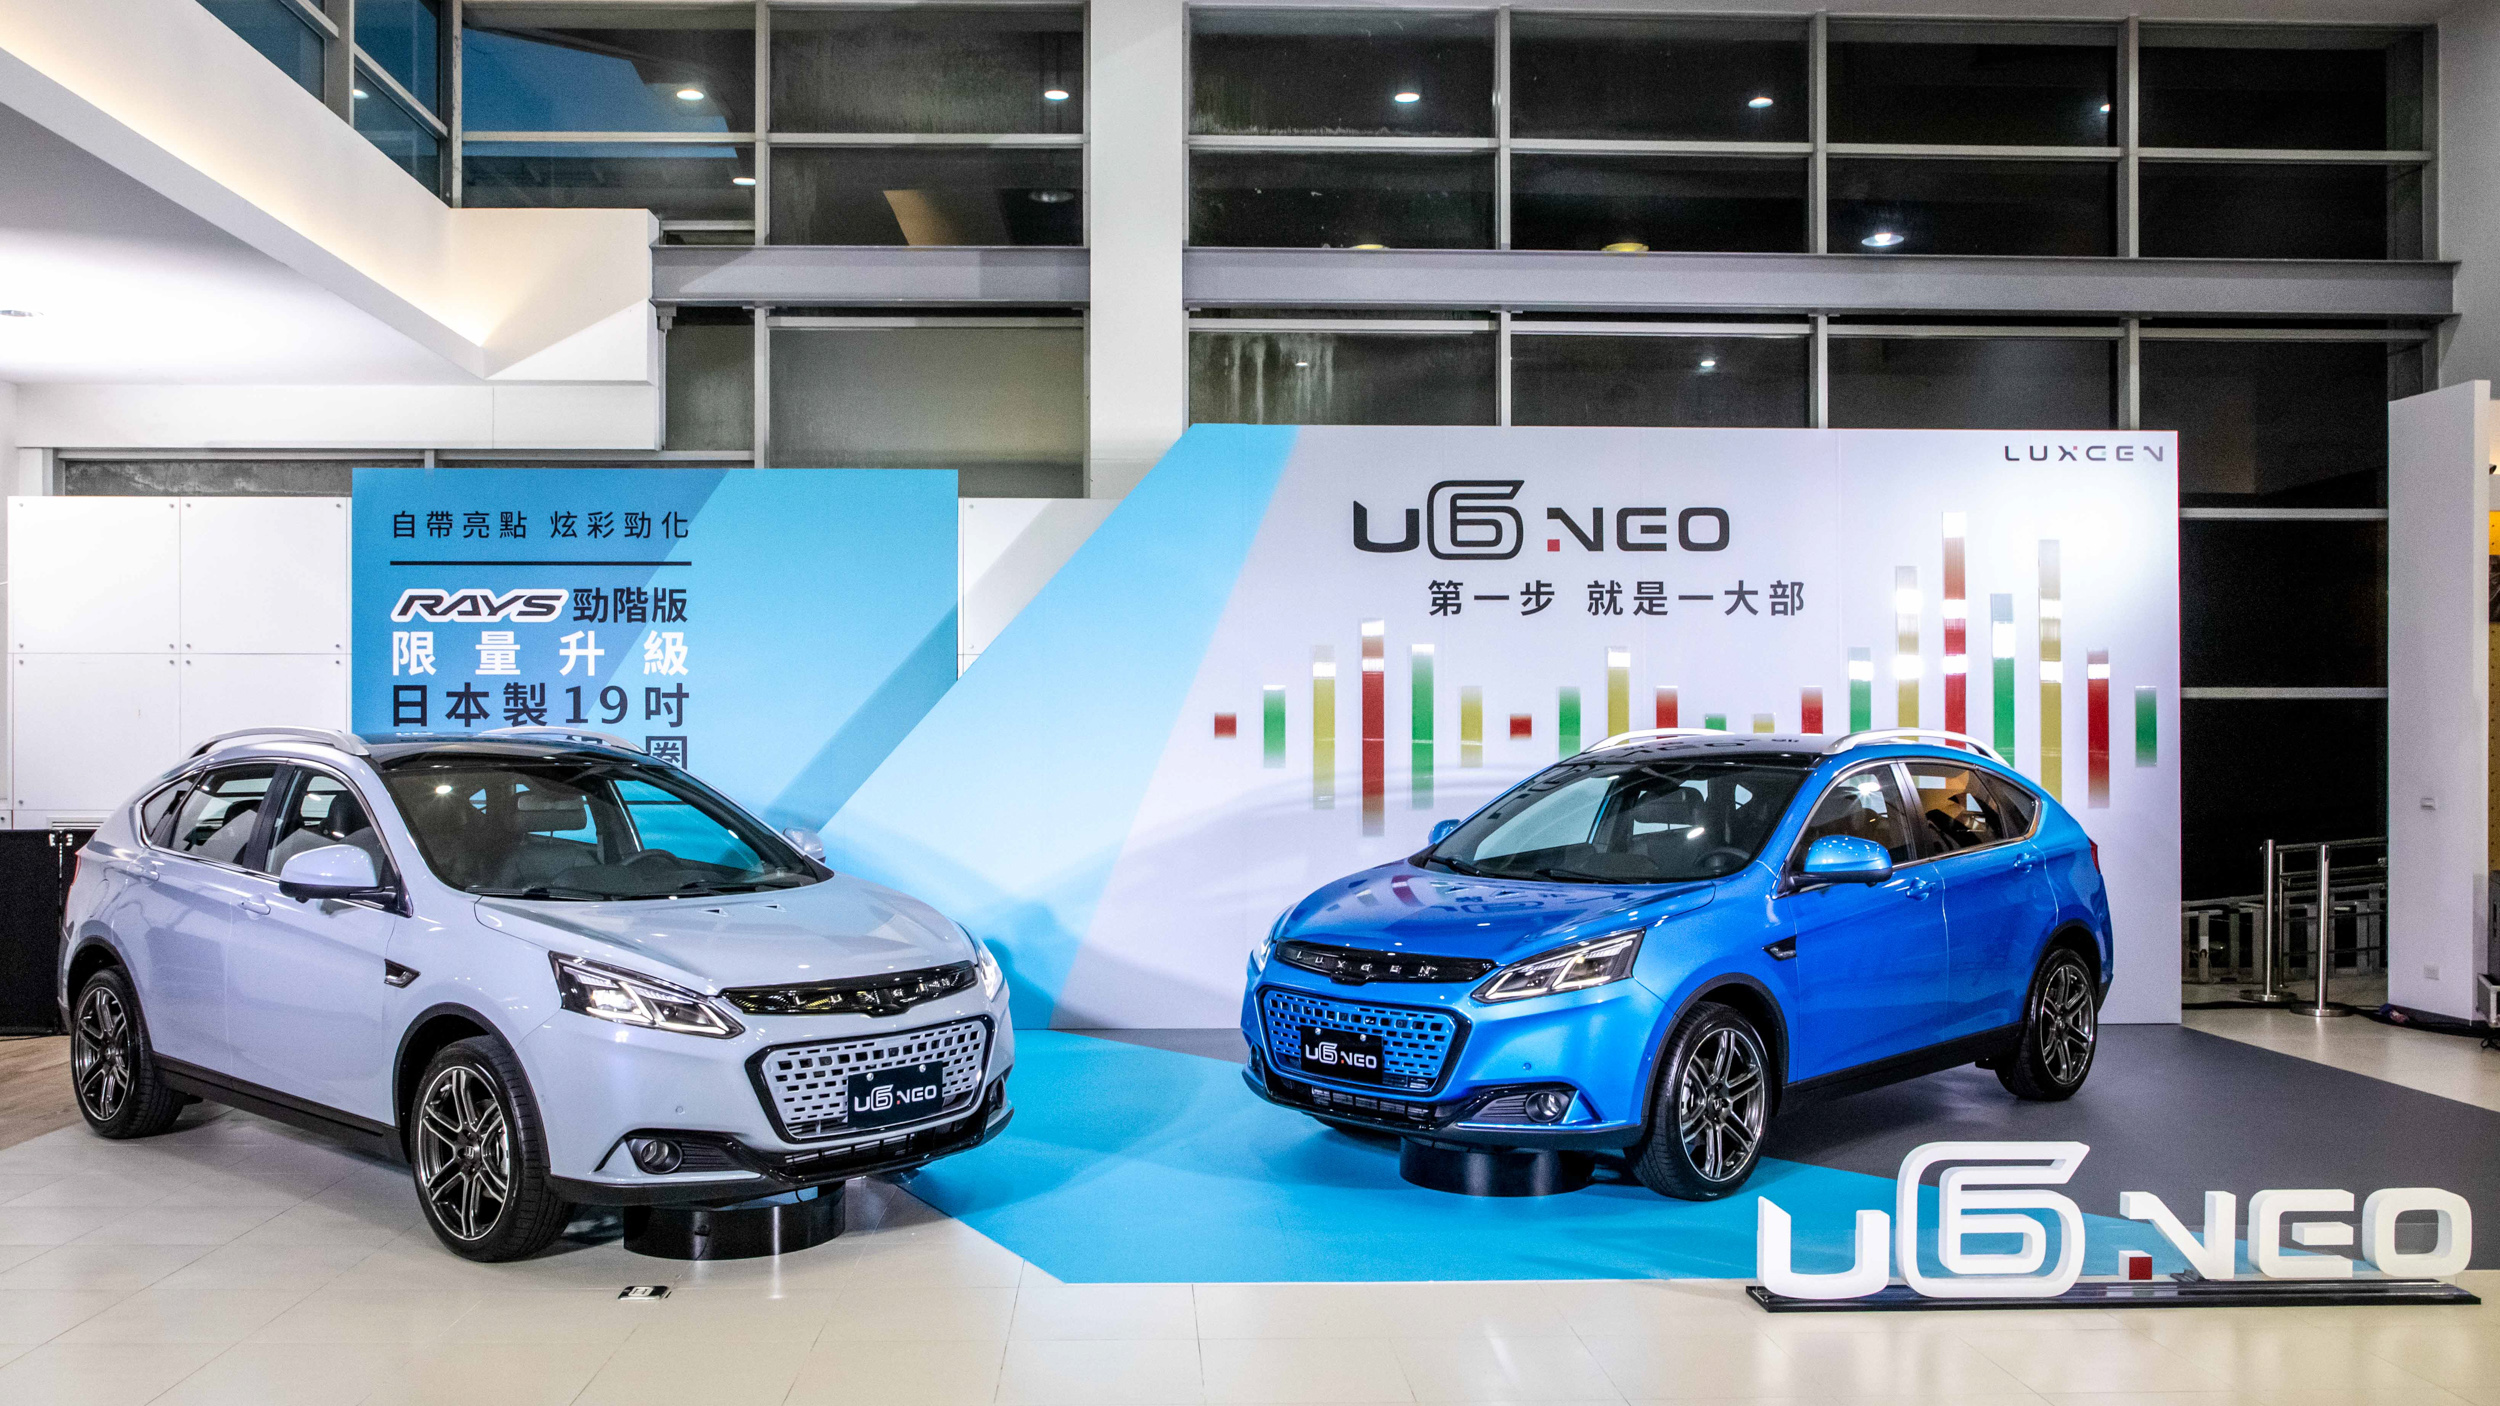 ▲ LUXGEN U6 NEO 發表上市，起始售價 75.8 萬起採三車型規劃！